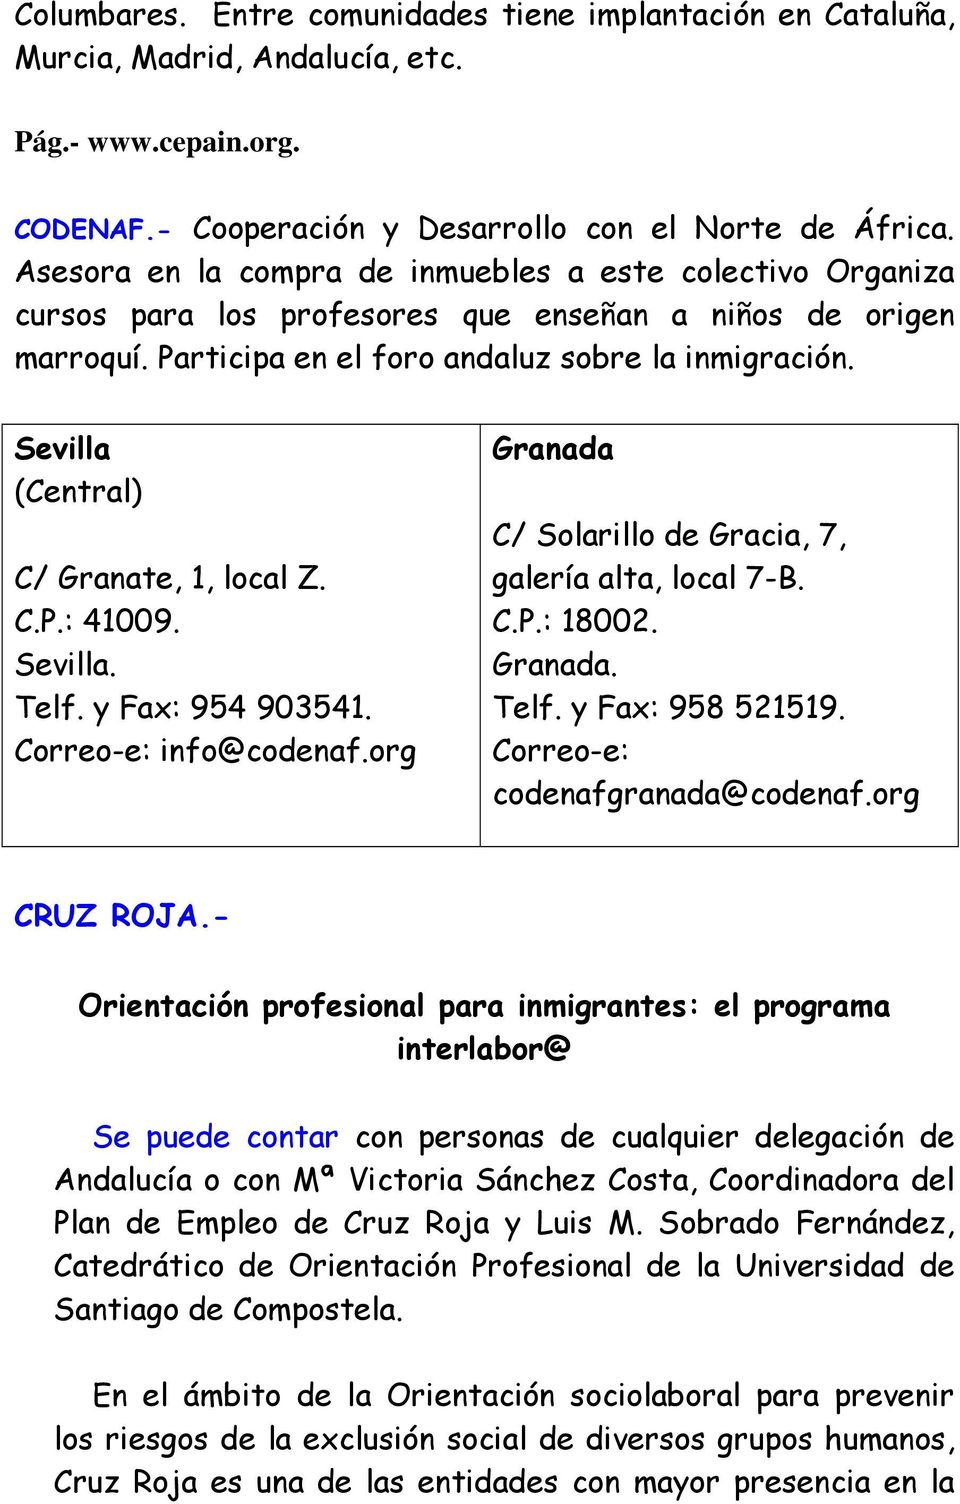 Sevilla (Central) C/ Granate, 1, local Z. C.P.: 41009. Sevilla. Telf. y Fax: 954 903541. Correo-e: info@codenaf.org Granada C/ Solarillo de Gracia, 7, galería alta, local 7-B. C.P.: 18002. Granada. Telf. y Fax: 958 521519.